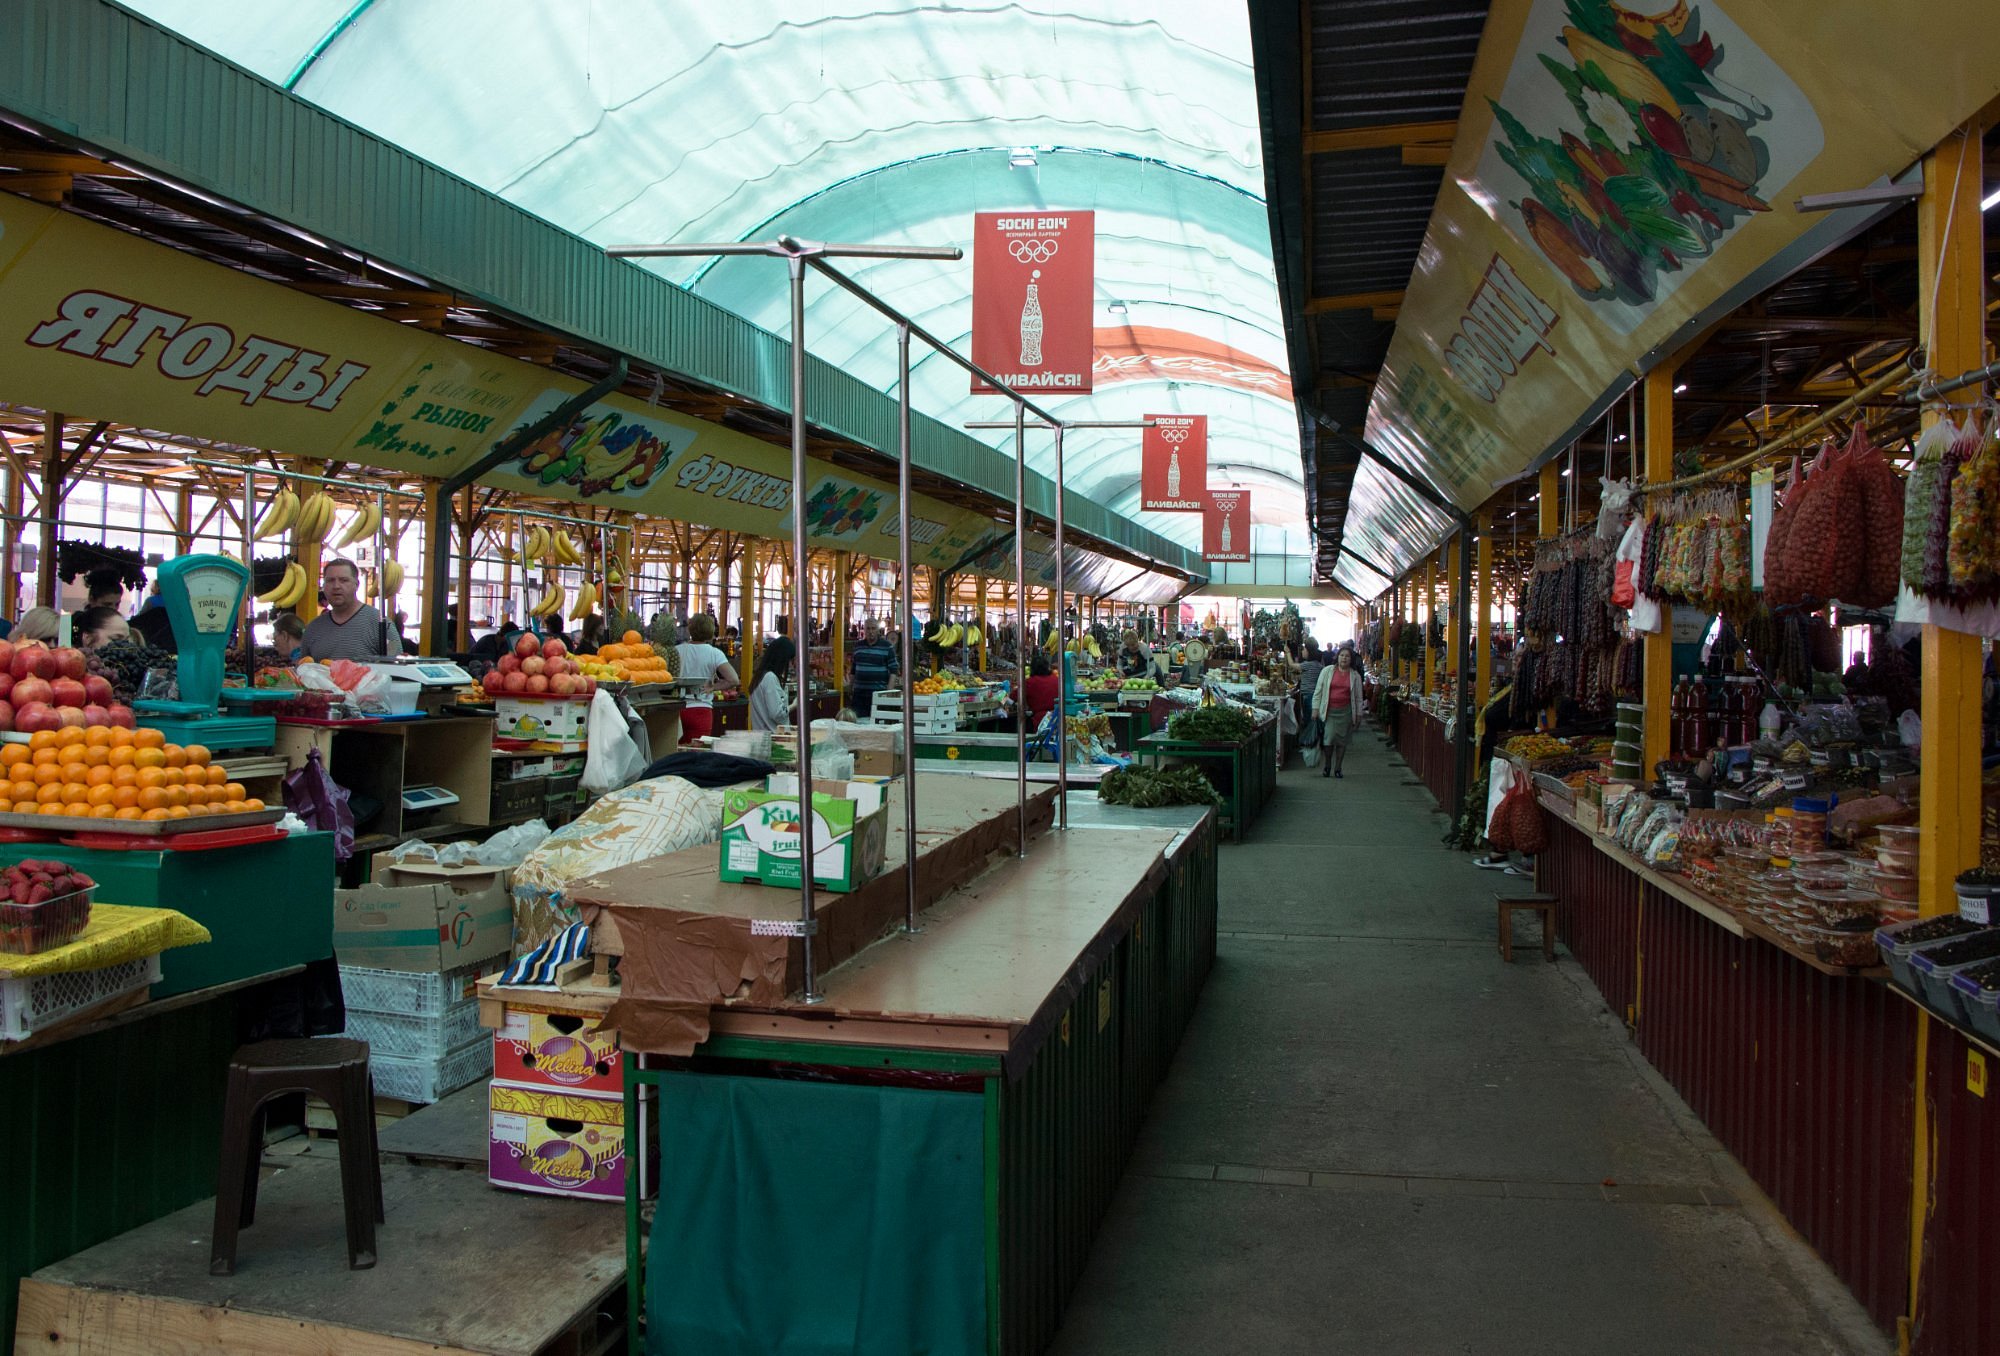 Adler Market